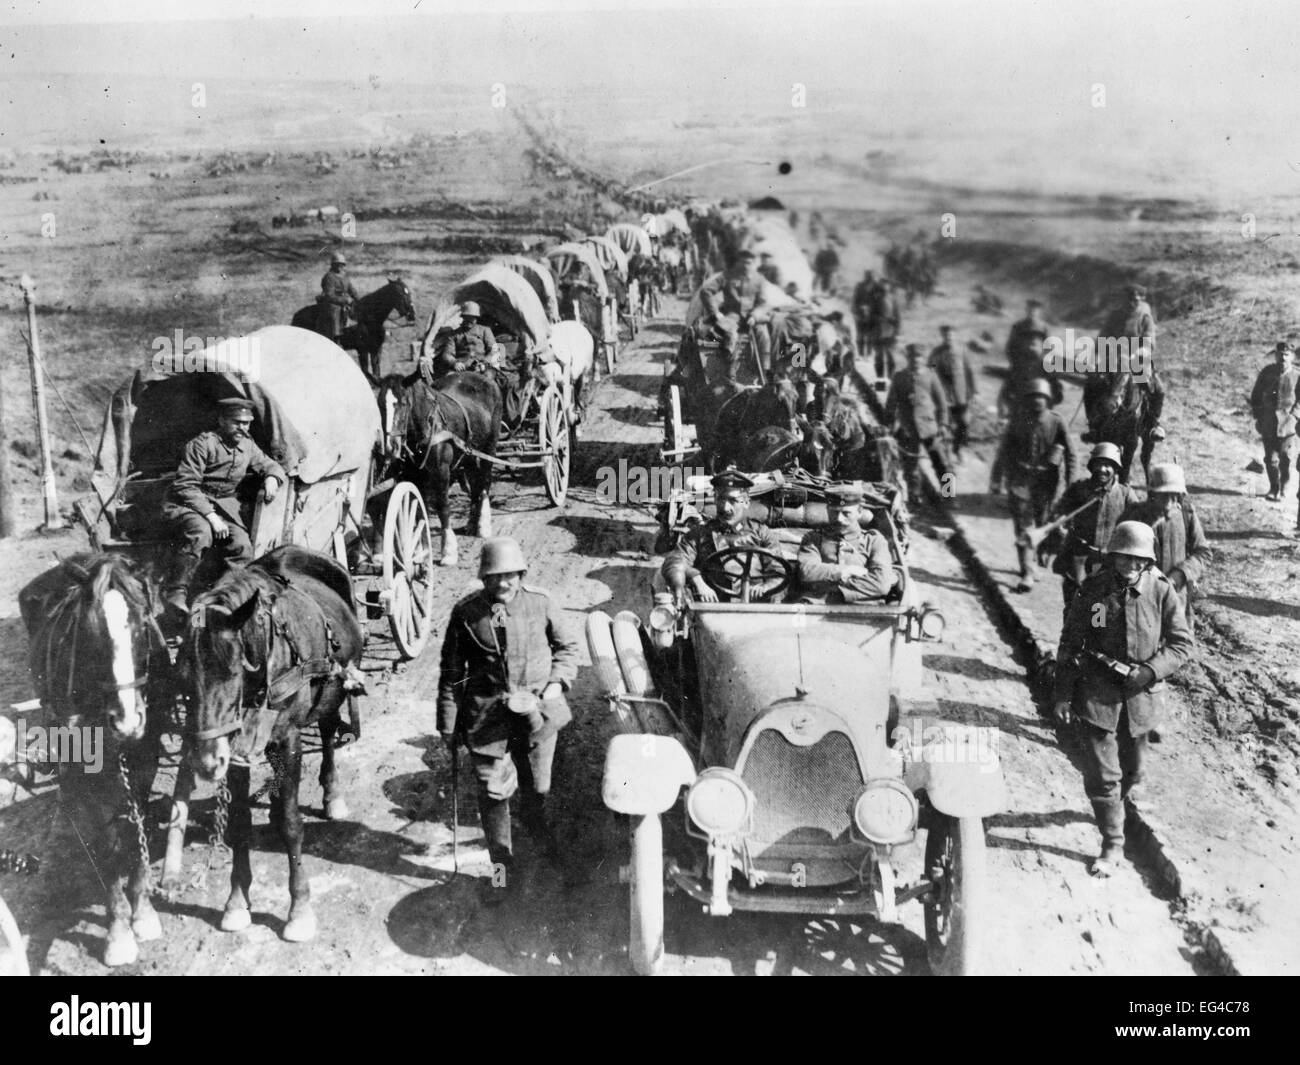 Les officiers allemands dans une voiture sur la route avec un convoi de wagons ; les soldats à pied le long de la route. La Première Guerre mondiale Banque D'Images